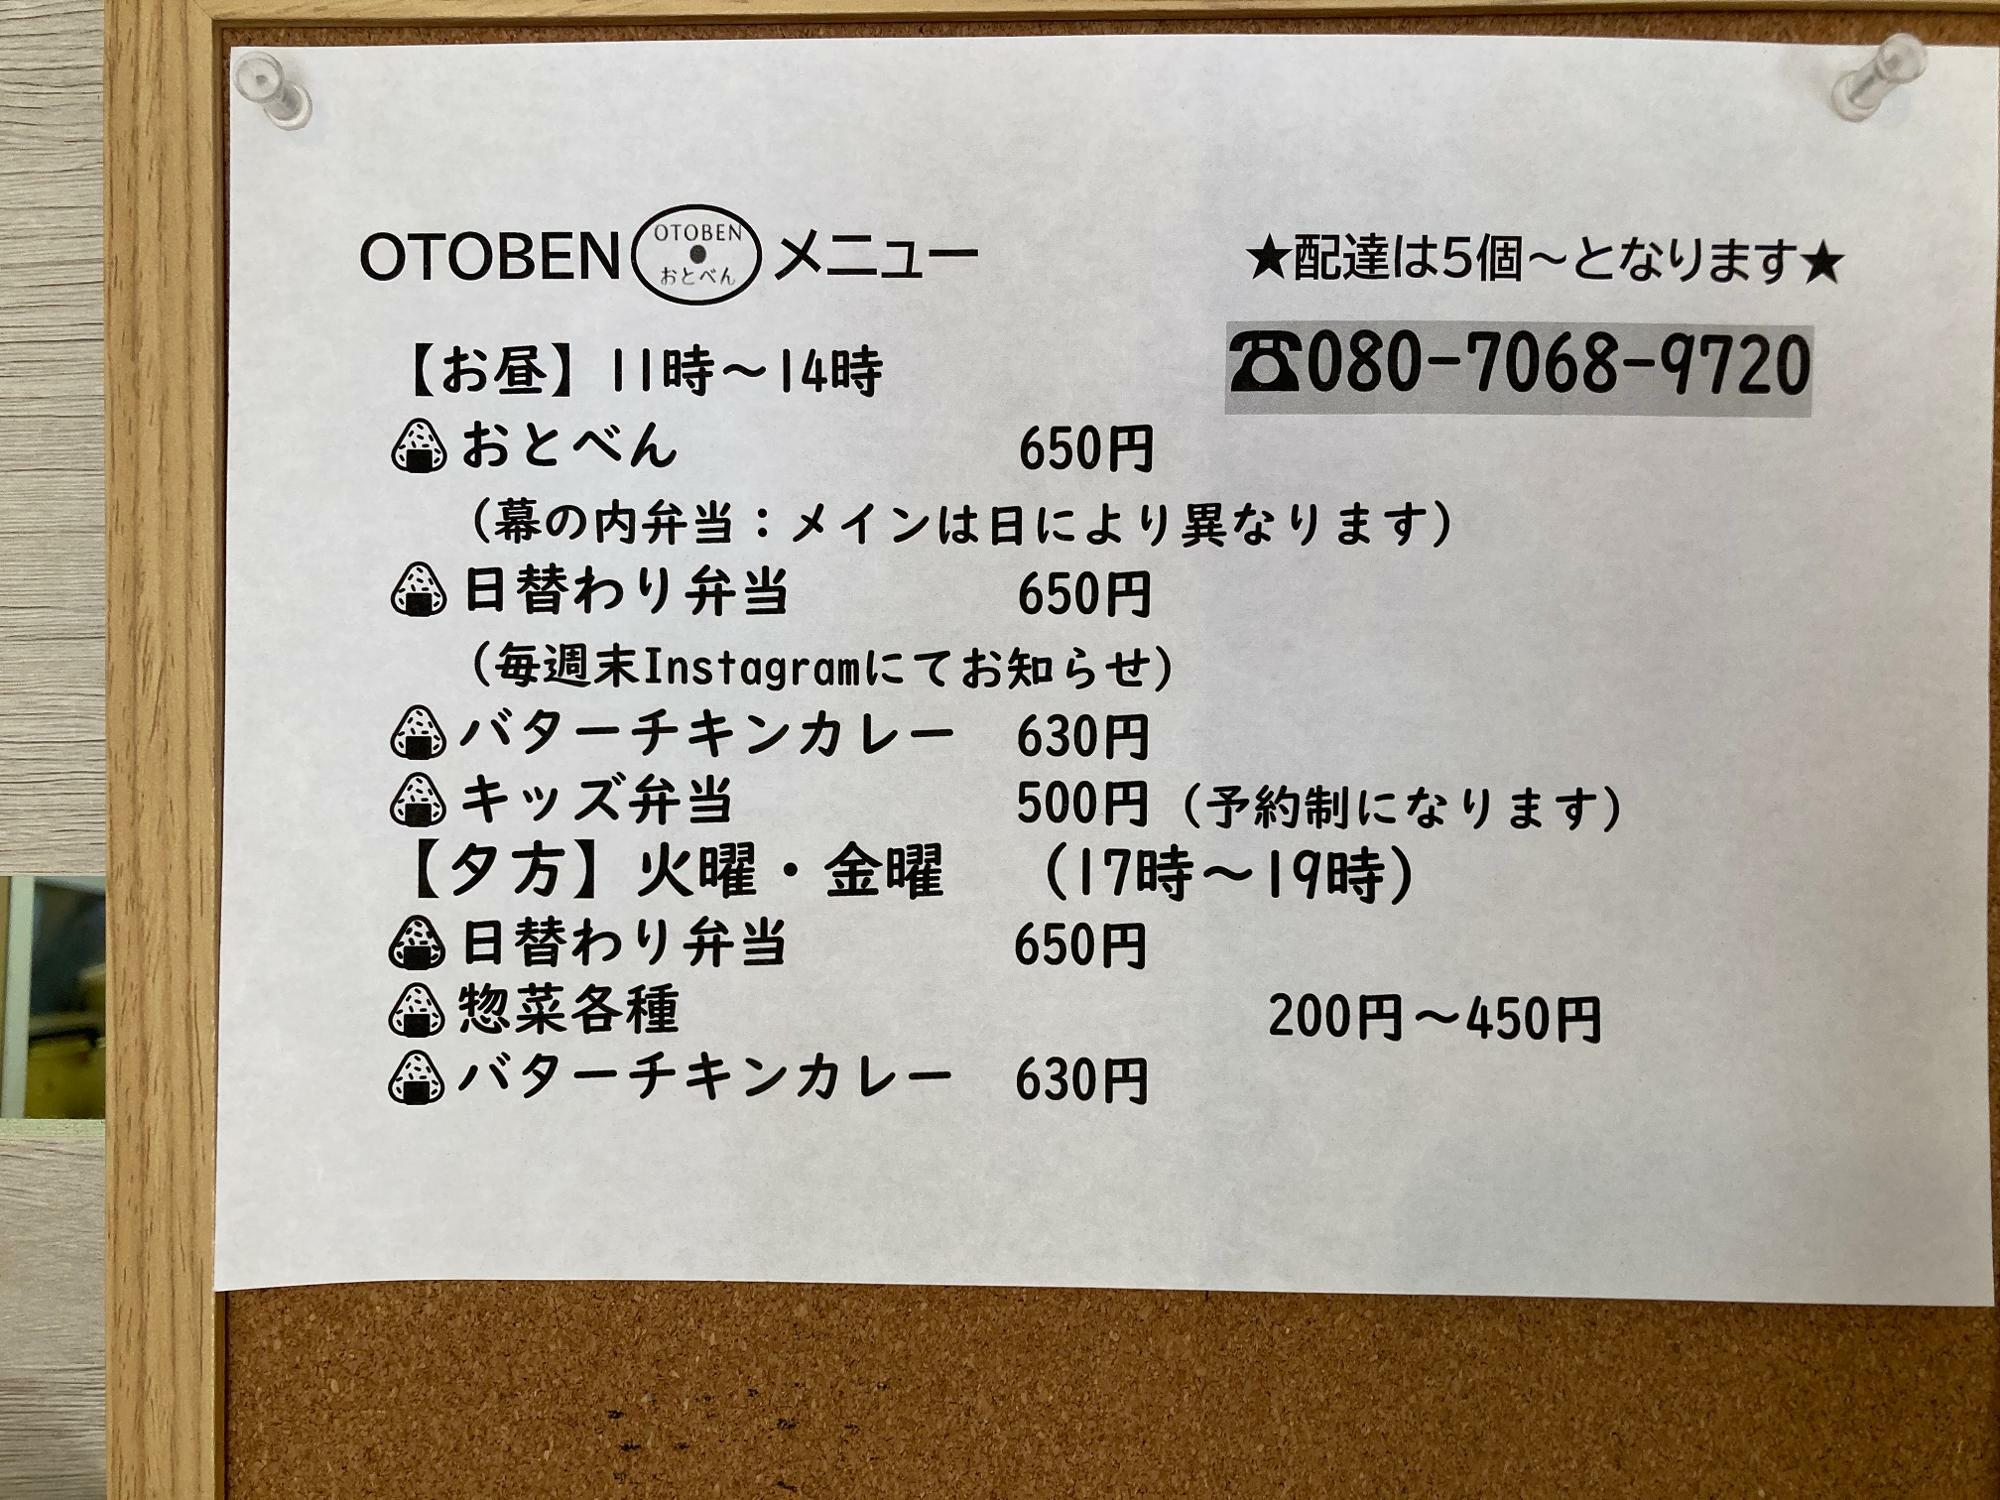 「OTOBEN」メニュー